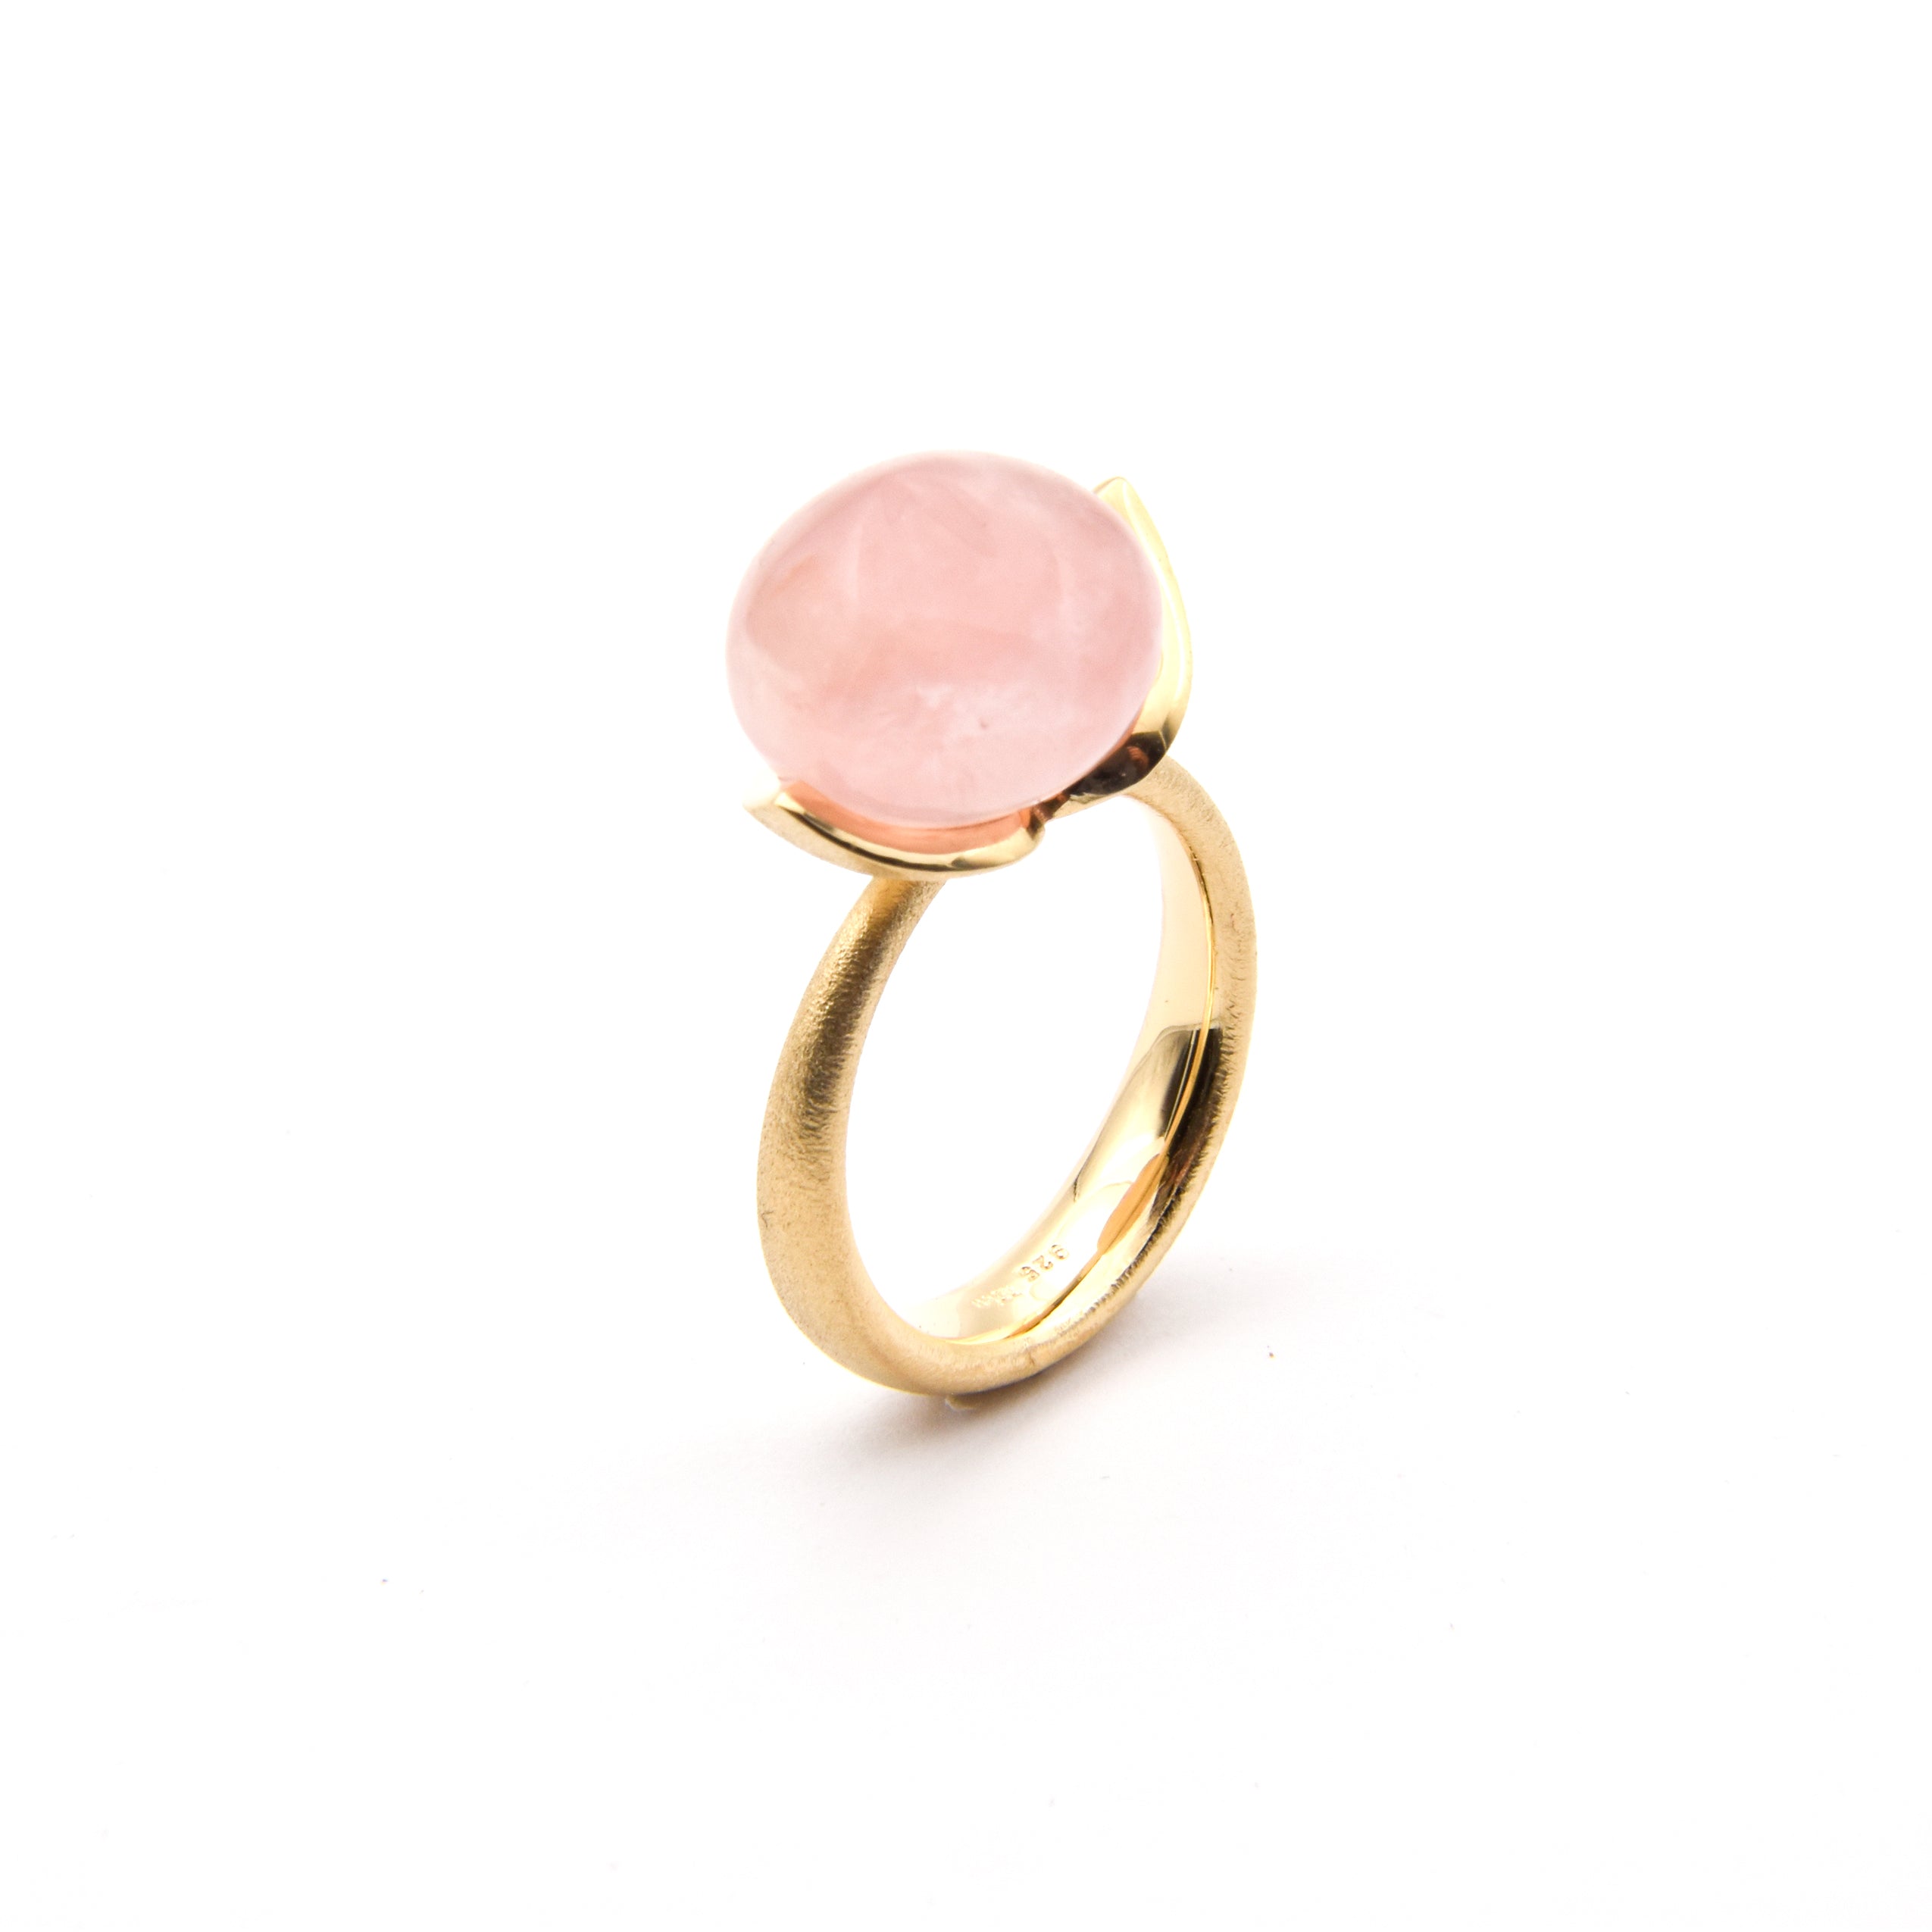 Dolce ring "groot" met rozenkwarts 925/-